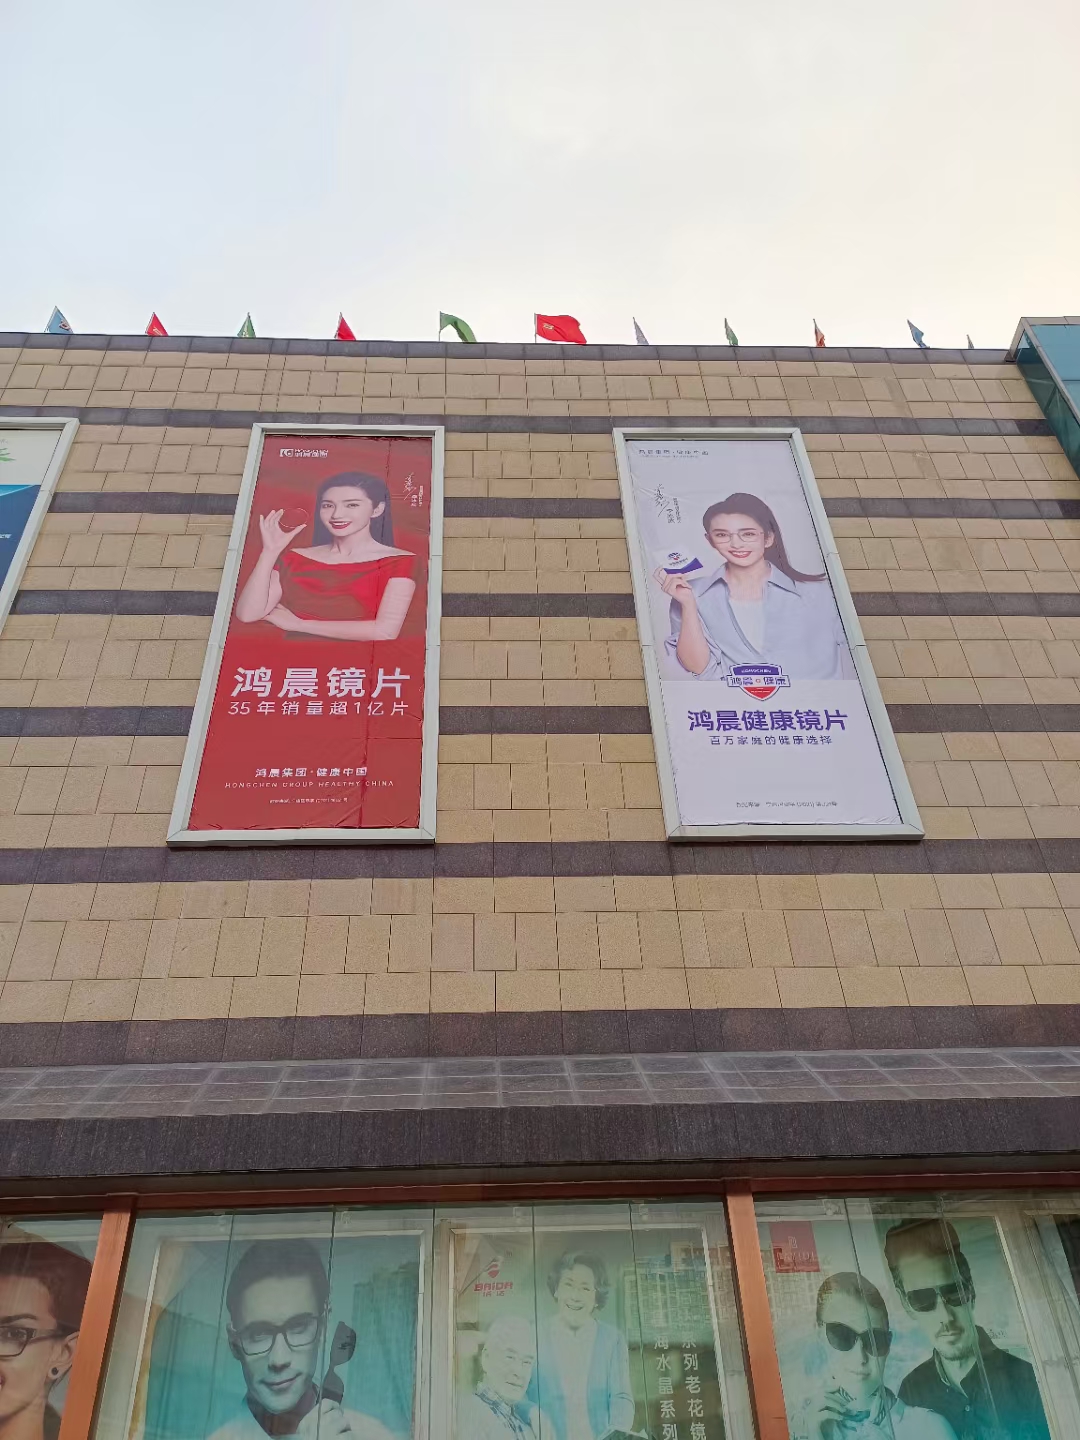 Wir kommen!Neue Werbung auf dem optischen Markt der Stadt Zhengzhou